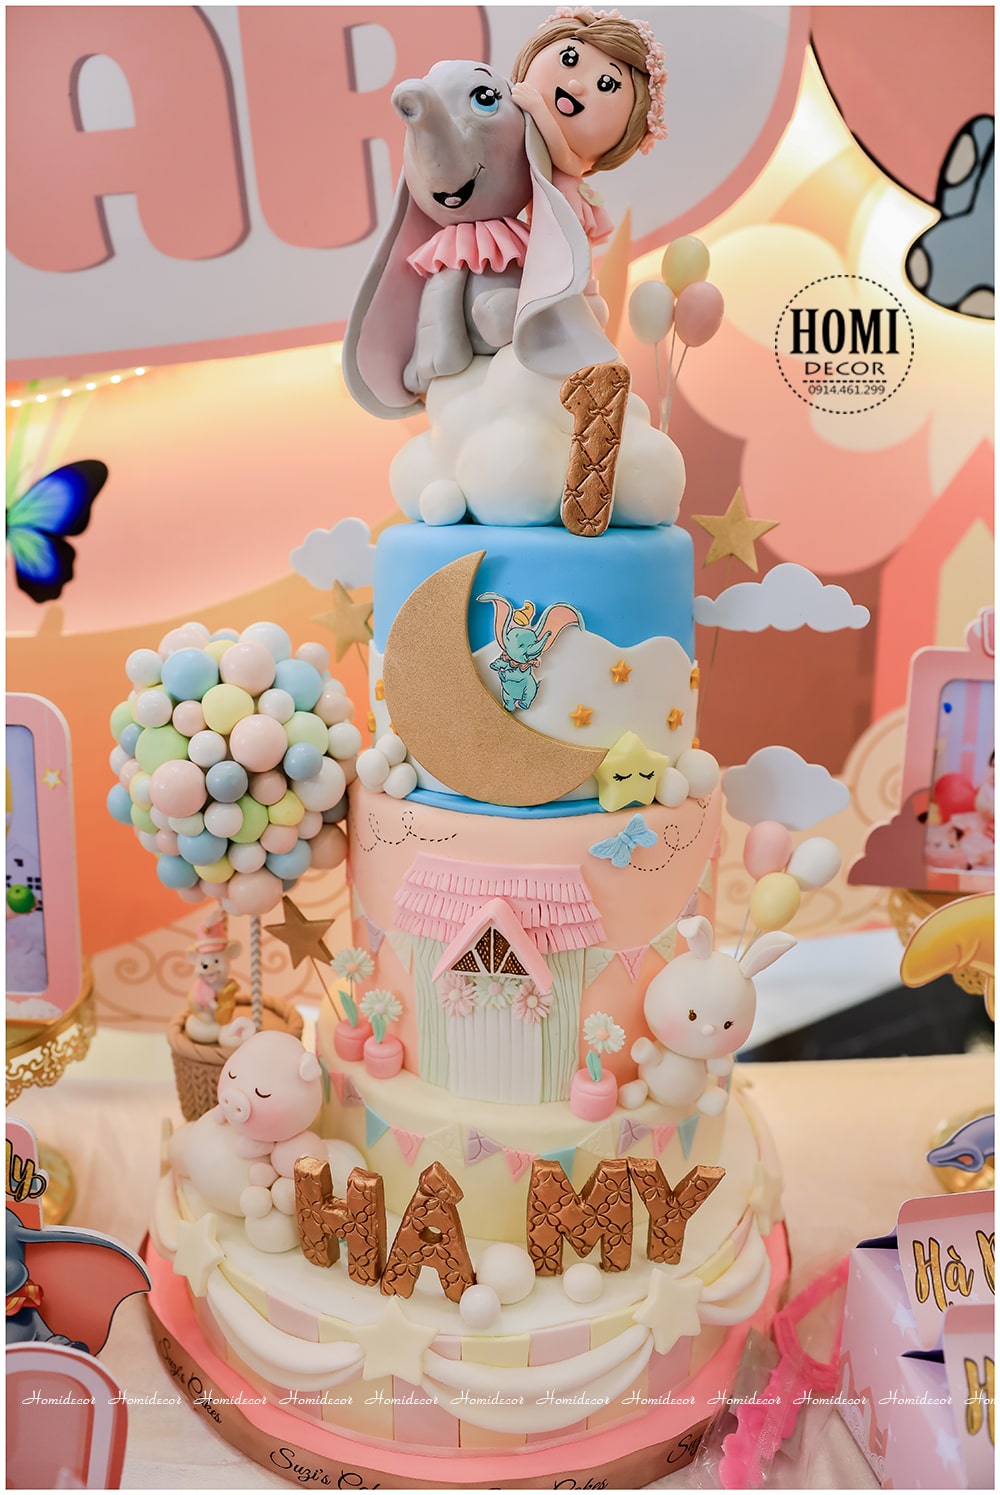 Trang trí sinh nhật bé gái chủ đề Dumbo - Chú voi biết bay